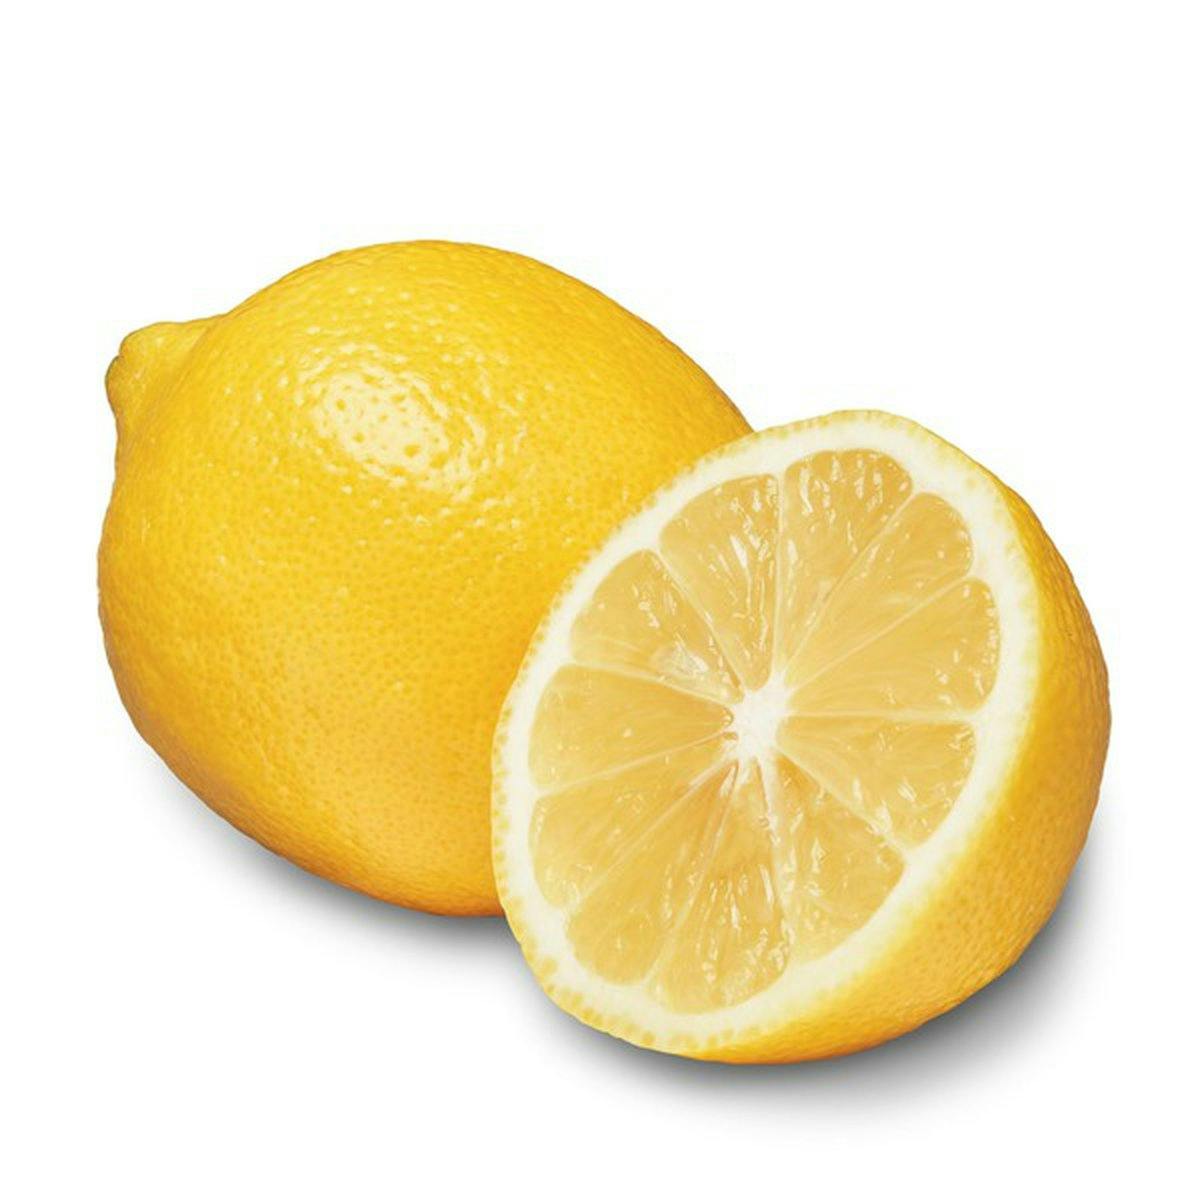 lemon juice or citric acid to taste